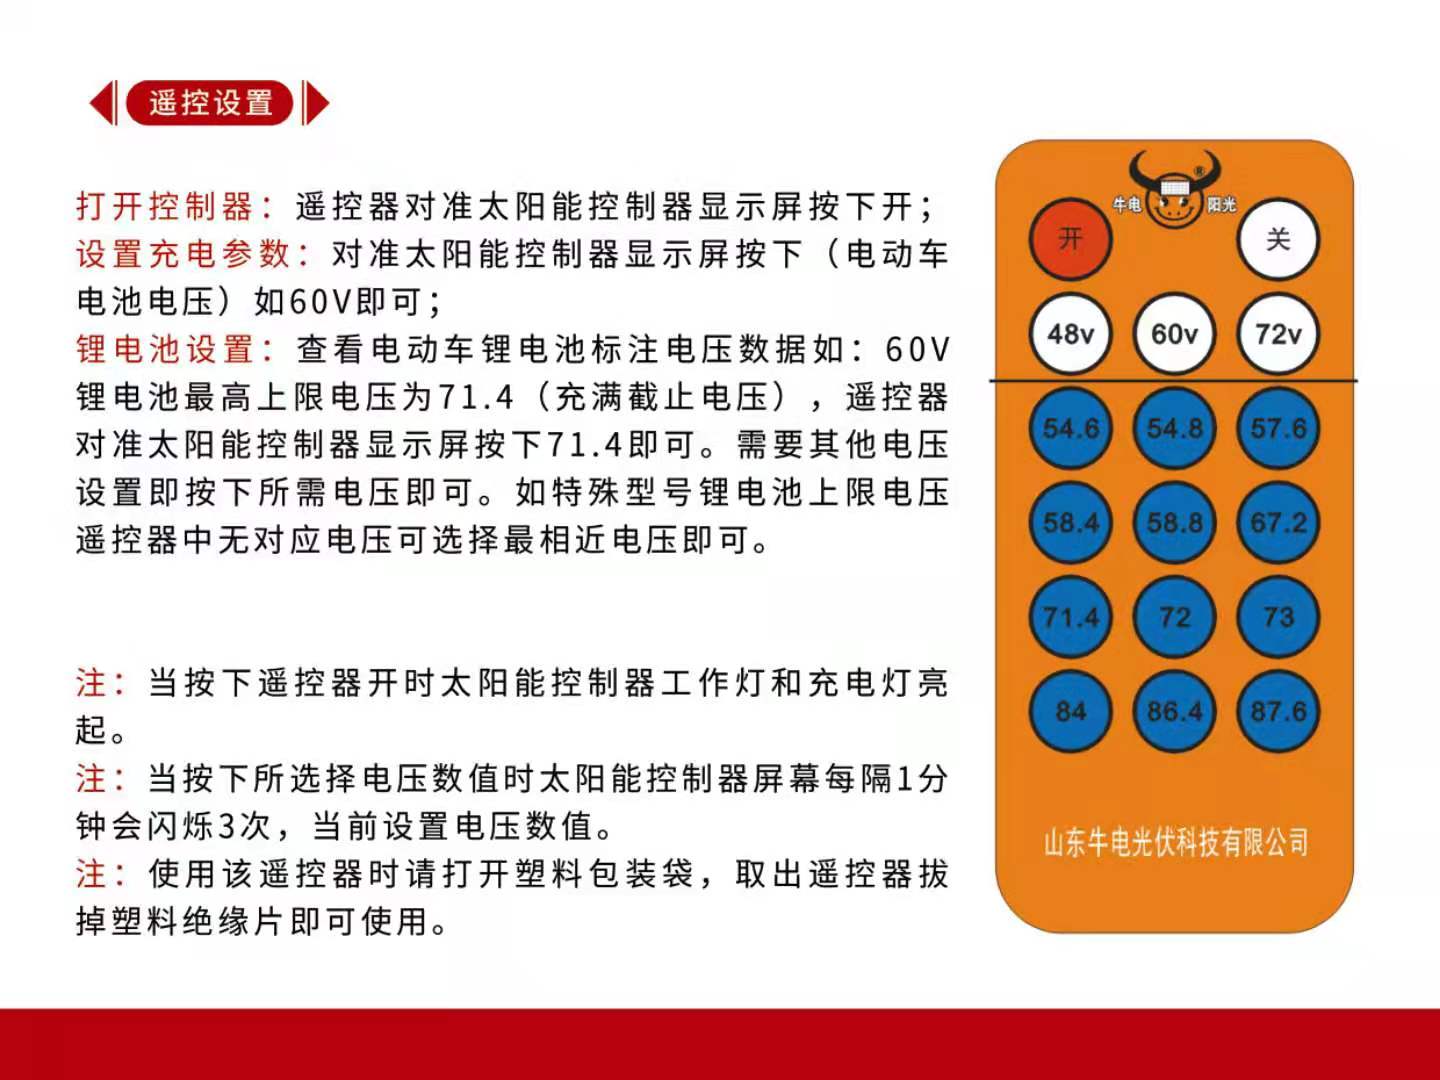 遥控器一键切换模式 48伏60伏72伏铅酸电池锂电池都可用